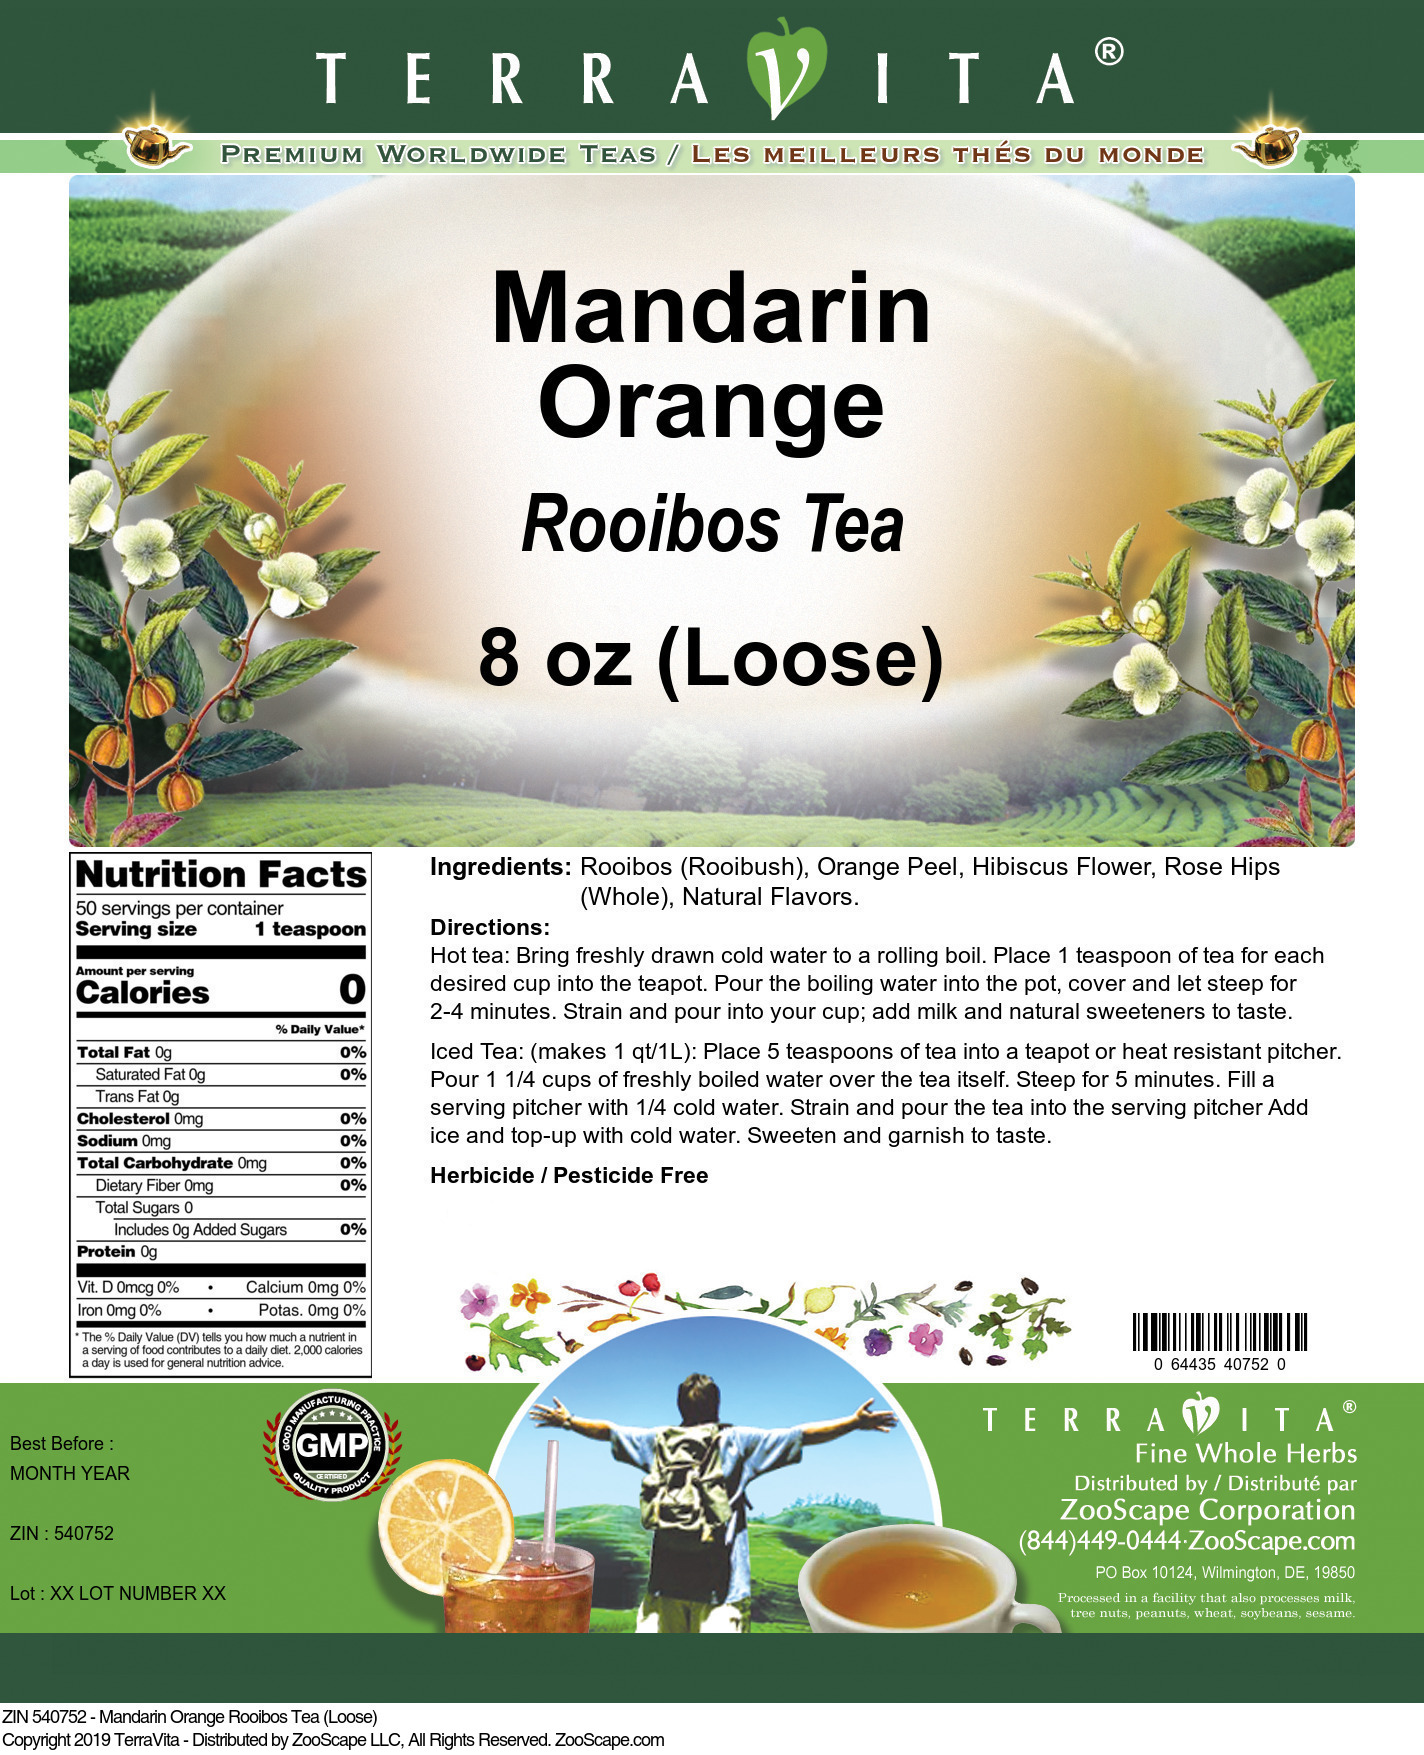 Mandarin Orange Rooibos Tea (Loose) - Label